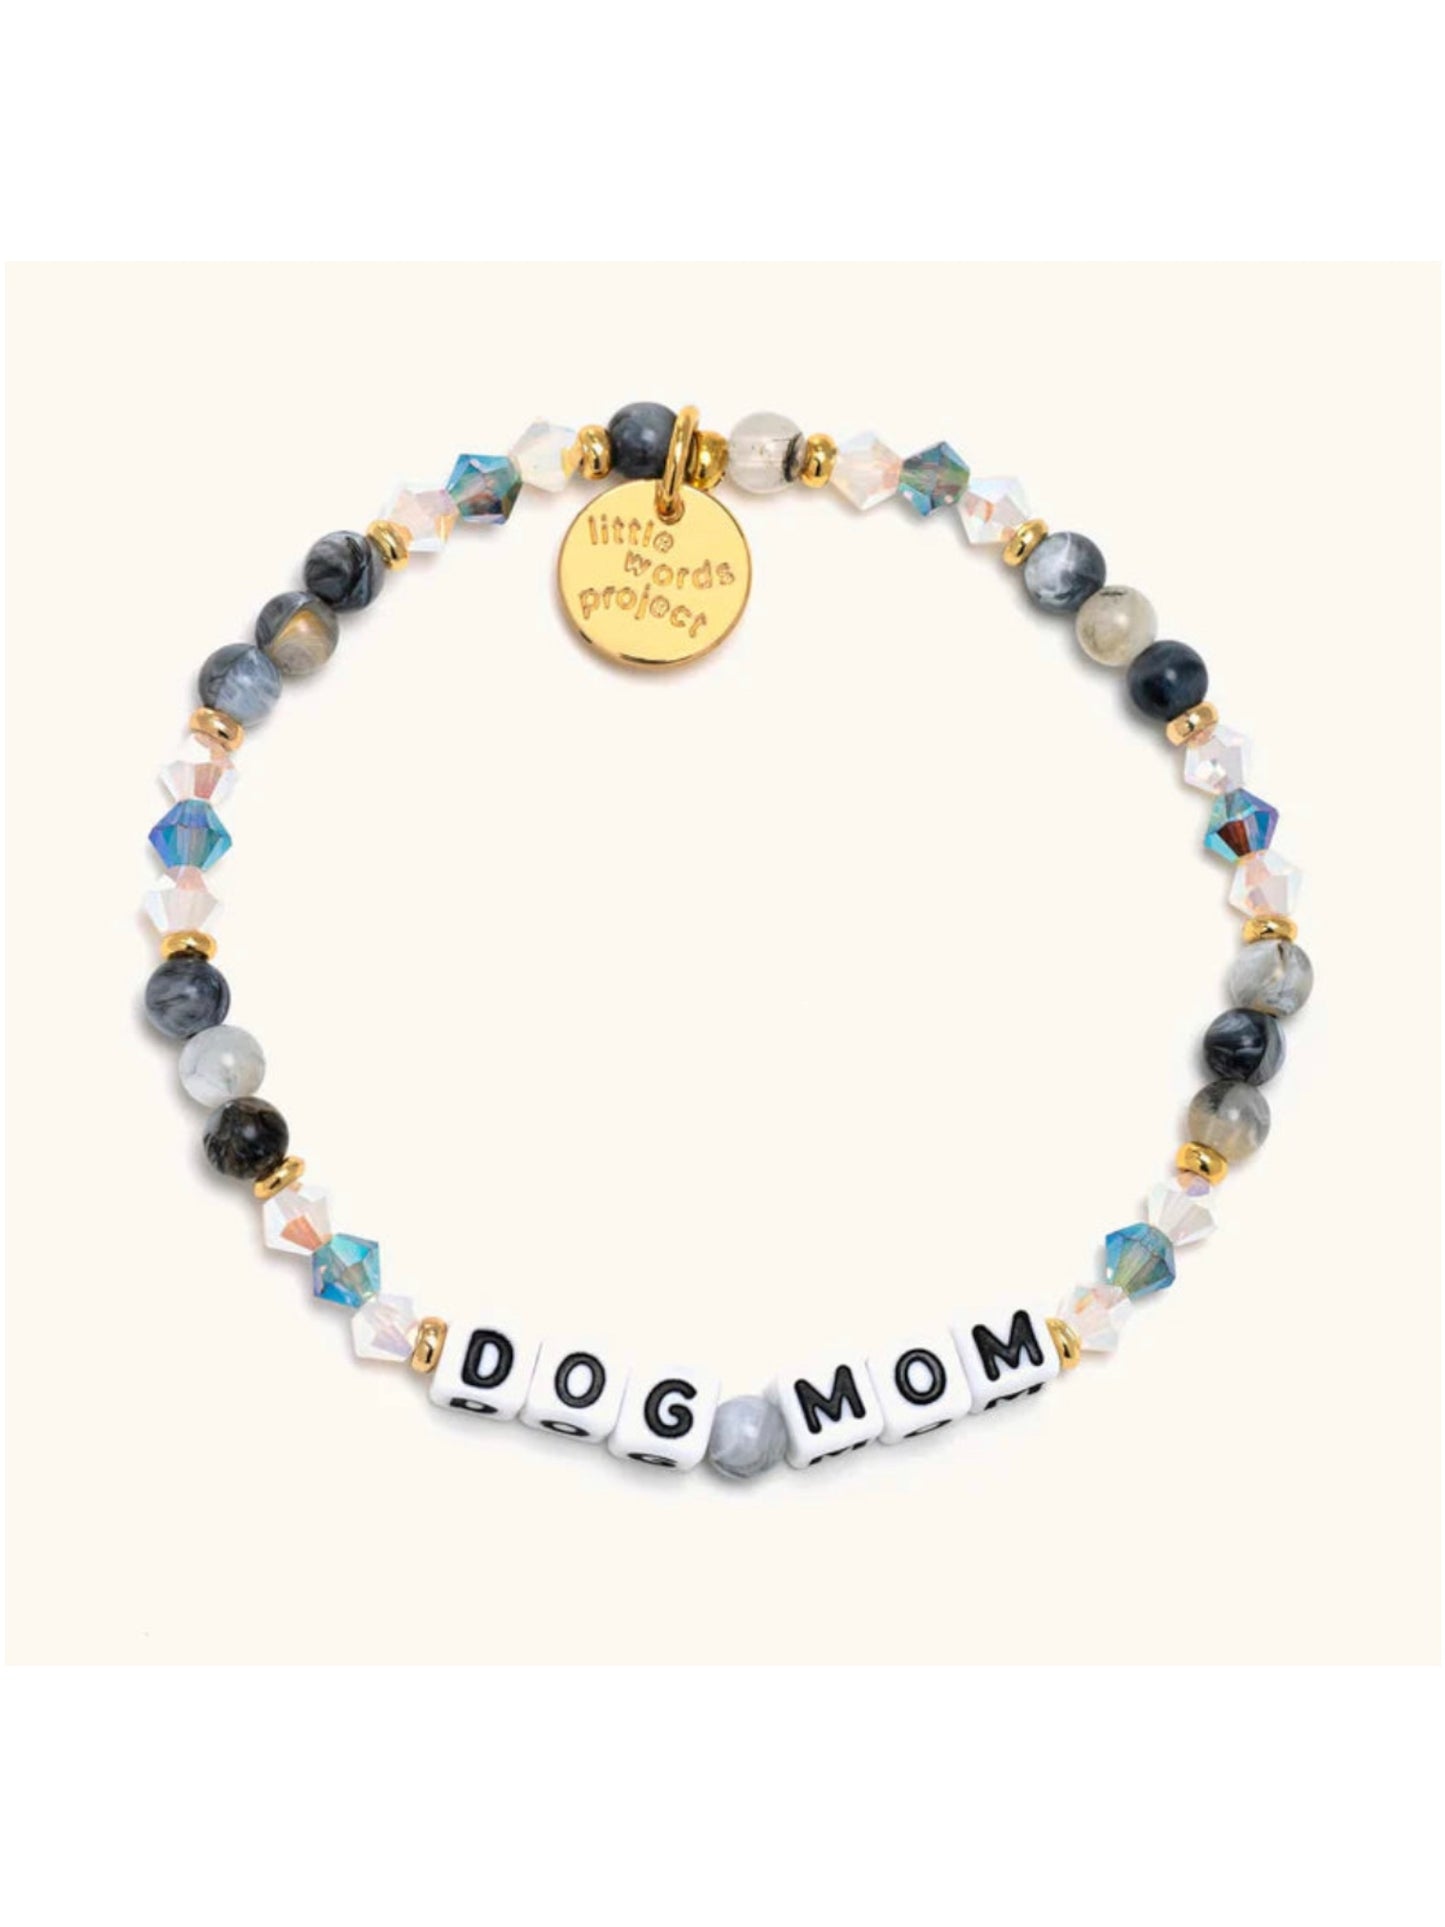 Little Words Project Dog Mom Bracelet